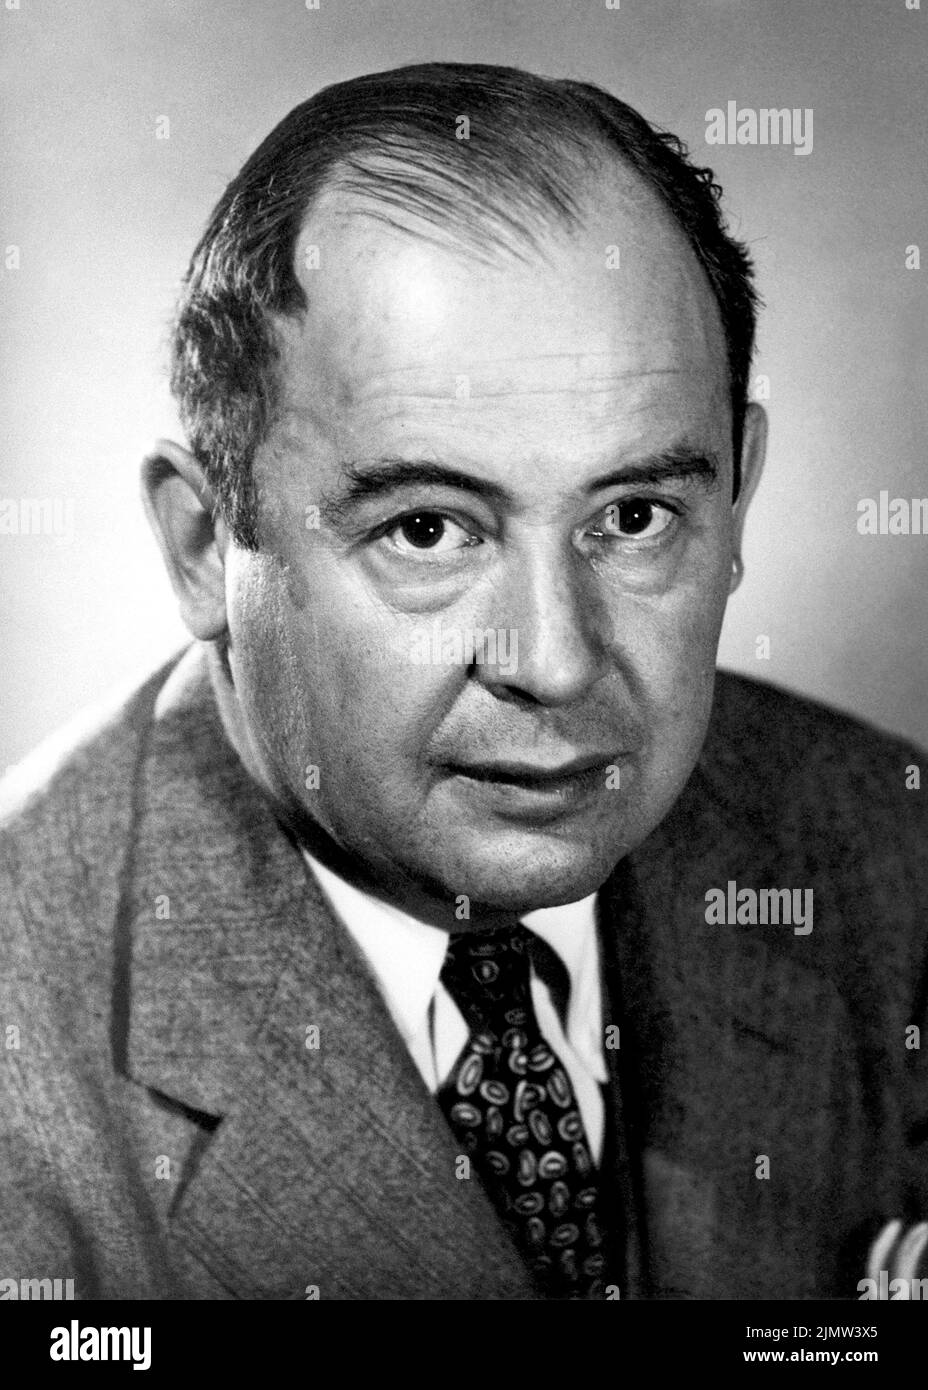 John von Neumann (1903-1957), ungarisch-amerikanischer Mathematiker, Physiker, Informatiker, Ingenieur und Universalgelehrter. Von Neumann leistete wichtige Beiträge zu einer Vielzahl von Bereichen. Während des Zweiten Weltkriegs arbeitete er am Manhattan-Projekt und wurde später Kommissar der US-Atomenergiekommission. Foto: 1956. Stockfoto